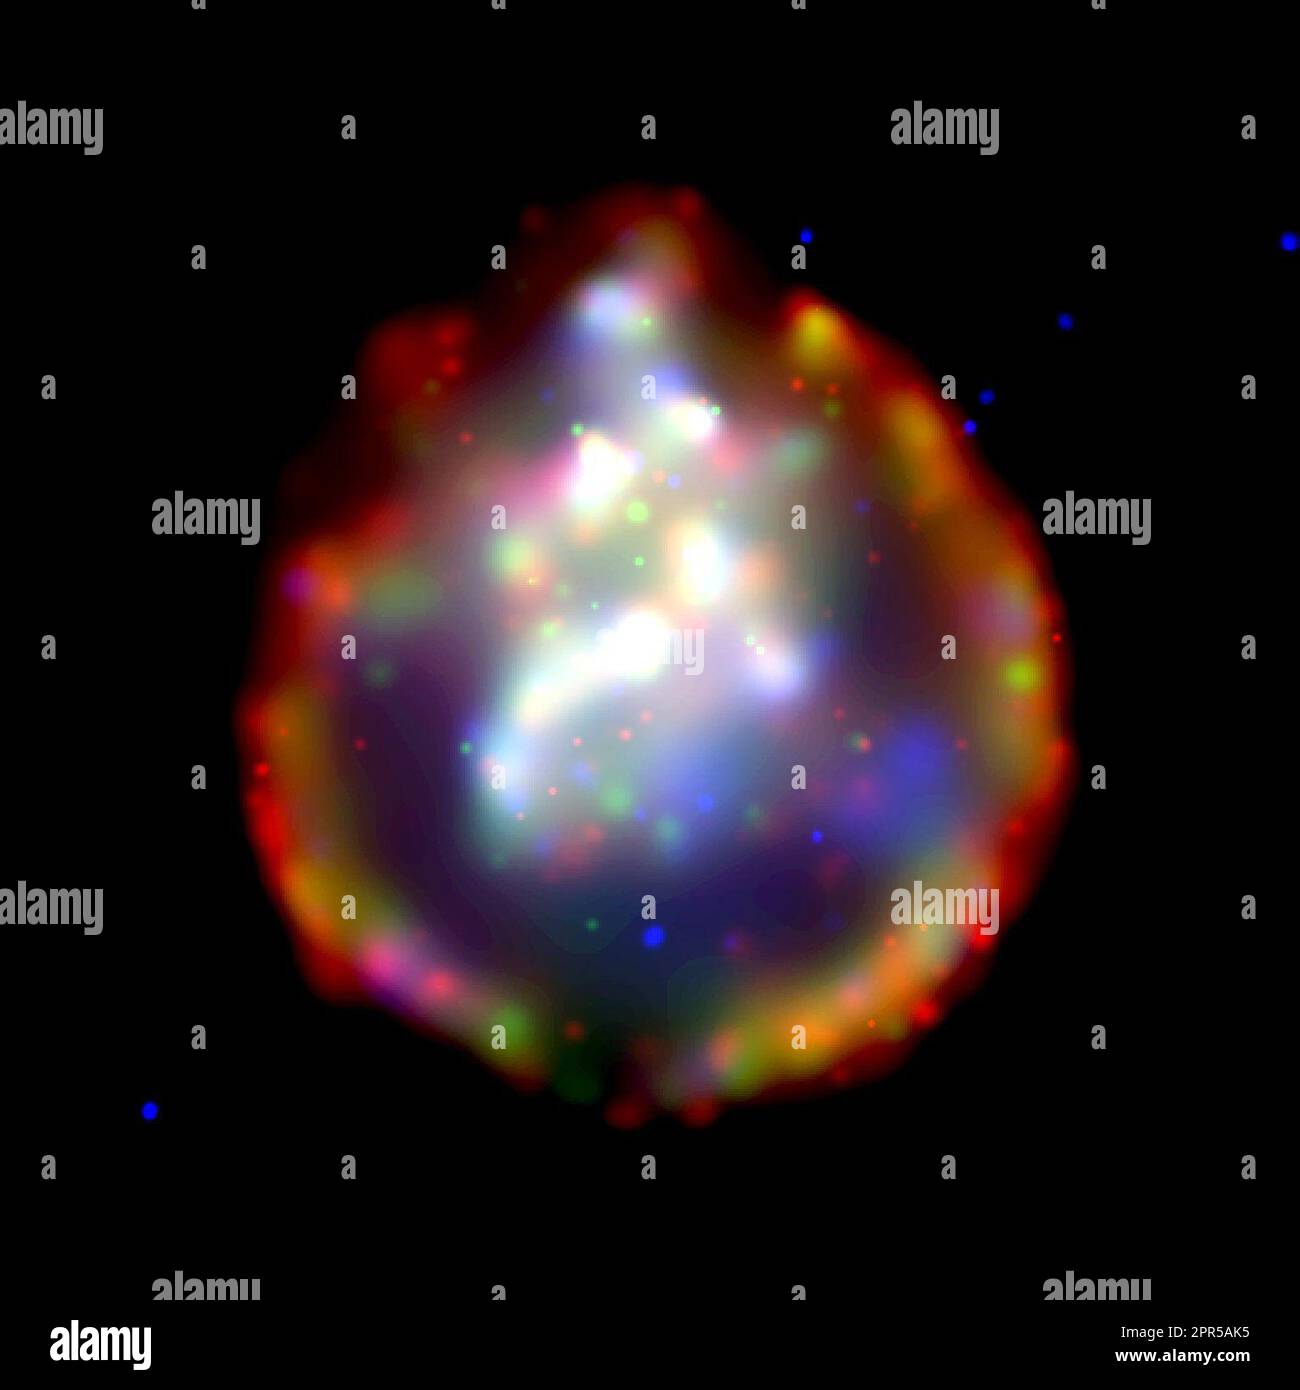 Sein beeindruckendes Bild vom Chandra Röntgenobservatorium von Supernova-Überresten SNR0103-72,6 zeigt einen fast perfekten Ring mit einem Durchmesser von etwa 150 Lichtjahren, der eine mit Sauerstoff angereicherte und auf Millionen von Grad Celsius erwärmte Gaswolke umgibt. Der Ring markiert die äußeren Grenzen einer Stoßwelle, die entsteht, wenn Material, das in die Supernova-Explosion geschleudert wird, mit dem interstellaren Gas kollidiert. Stockfoto